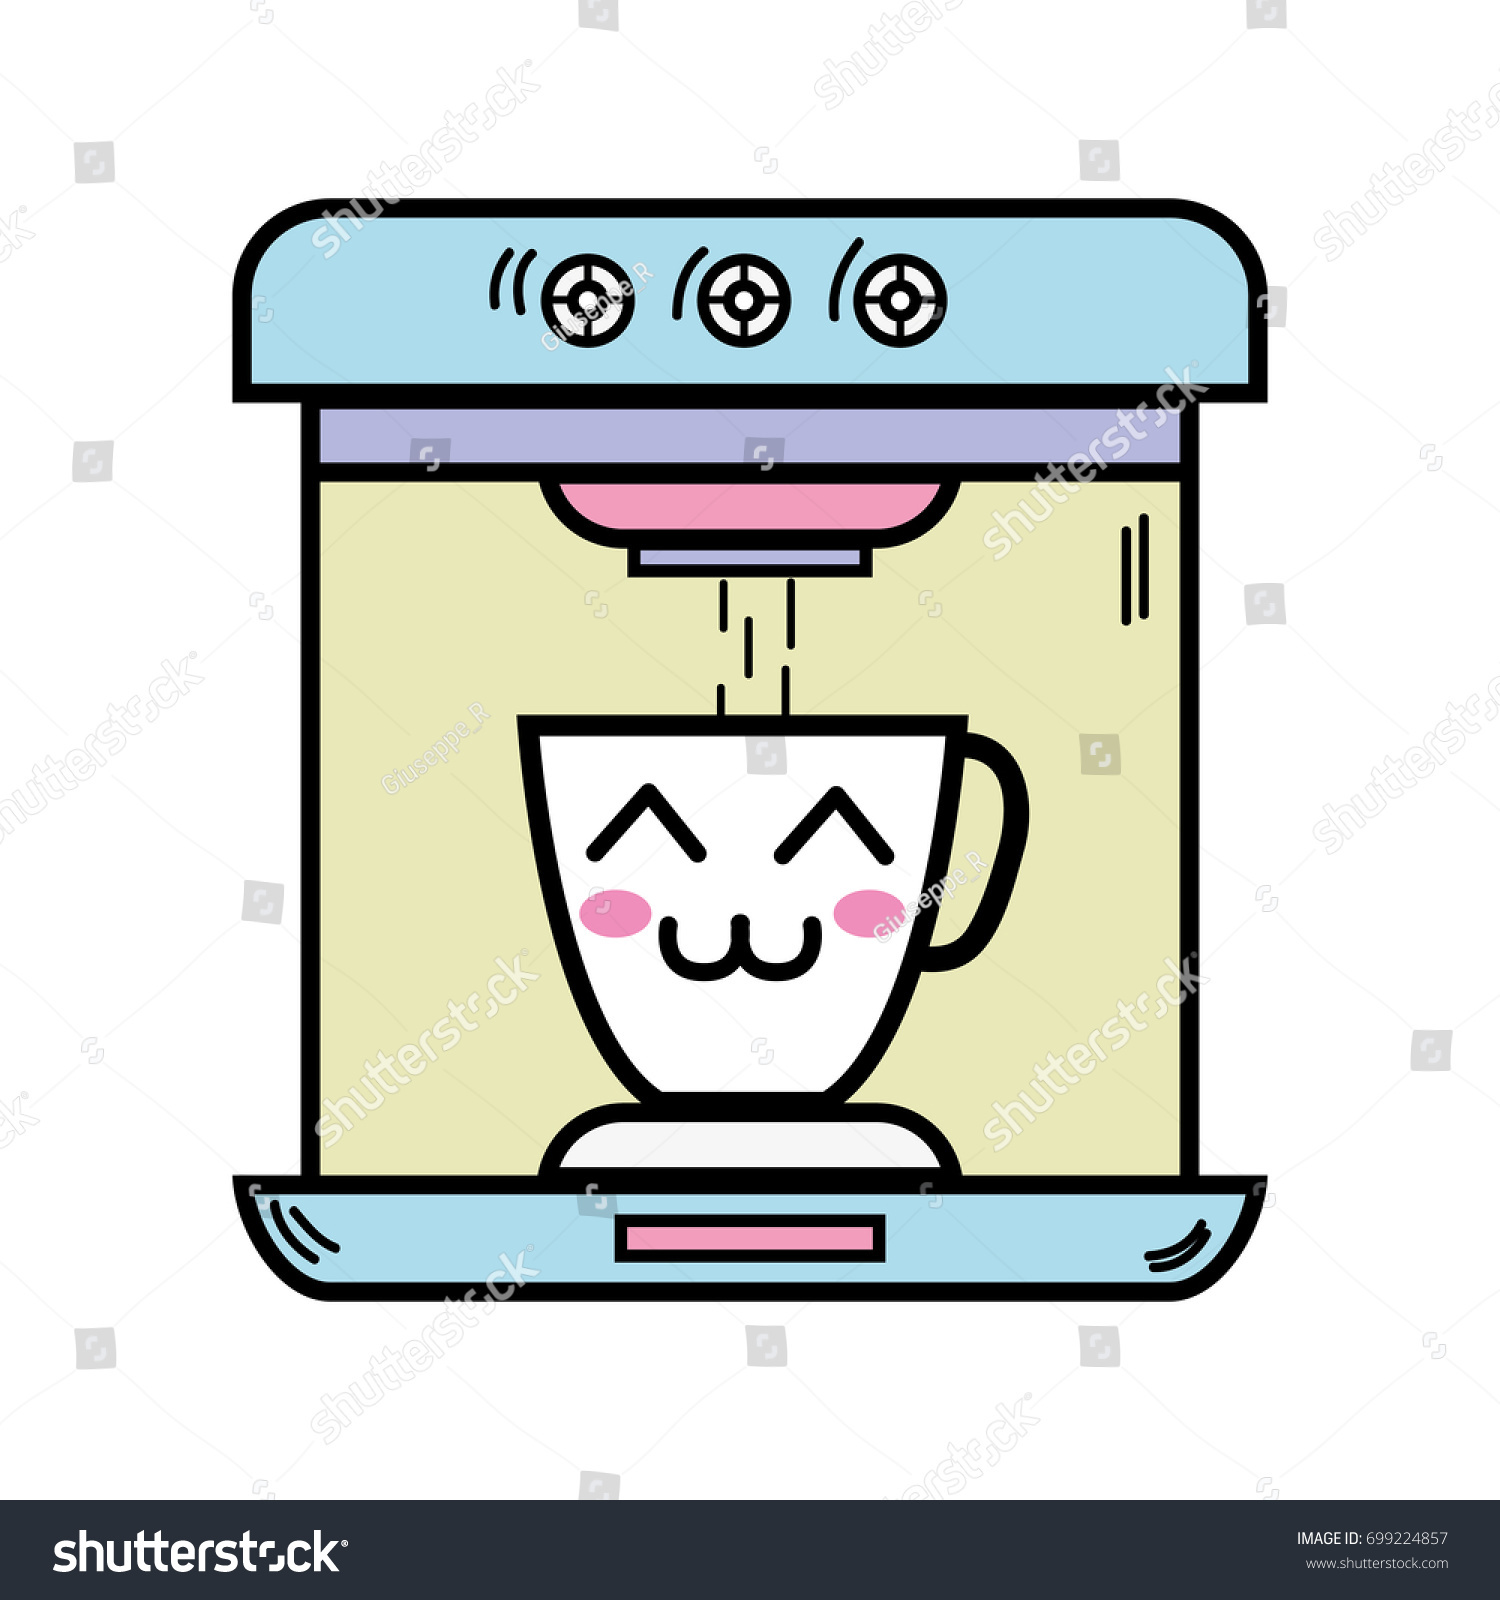 Kawaii Happy Coffee Maker Technology: vector de stock (libre de regalías) 699224995 | Shutterstock